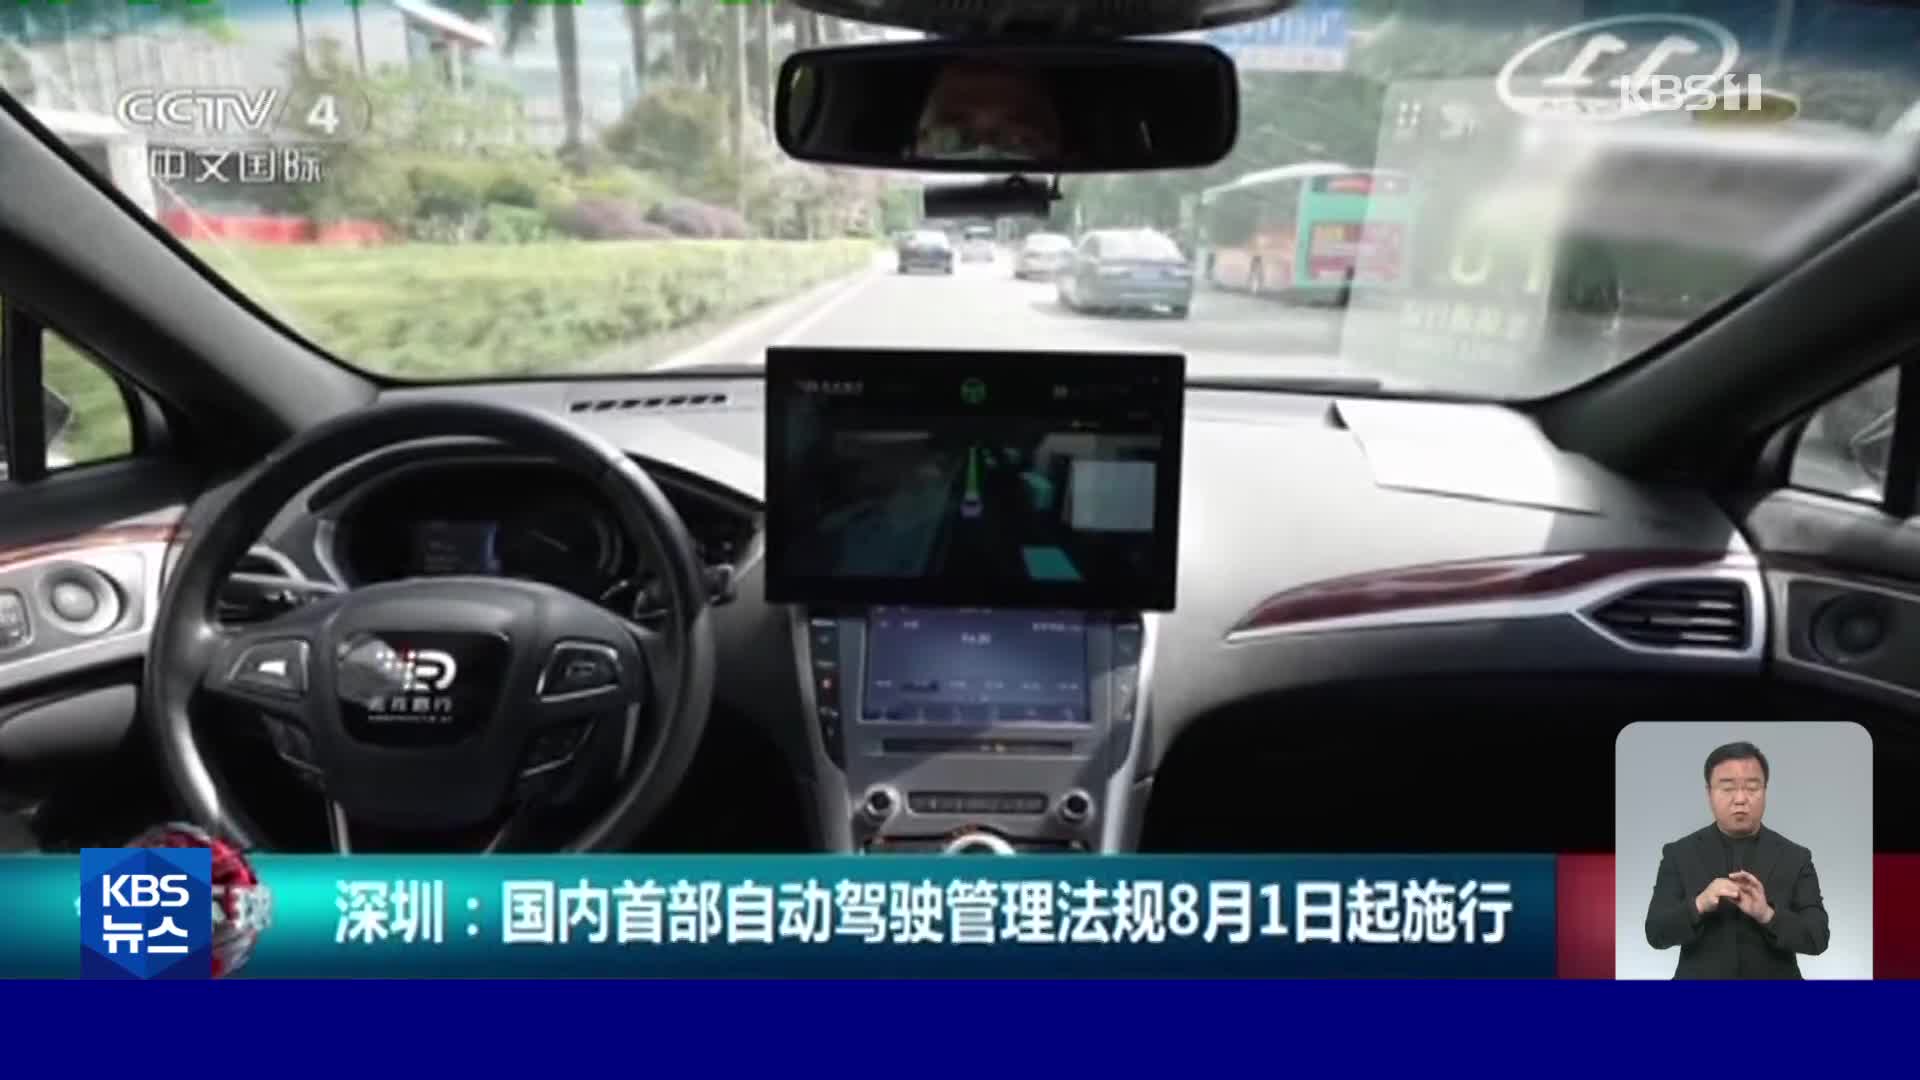 중국 최초로 완전 자율주행 자동차 운행 허용